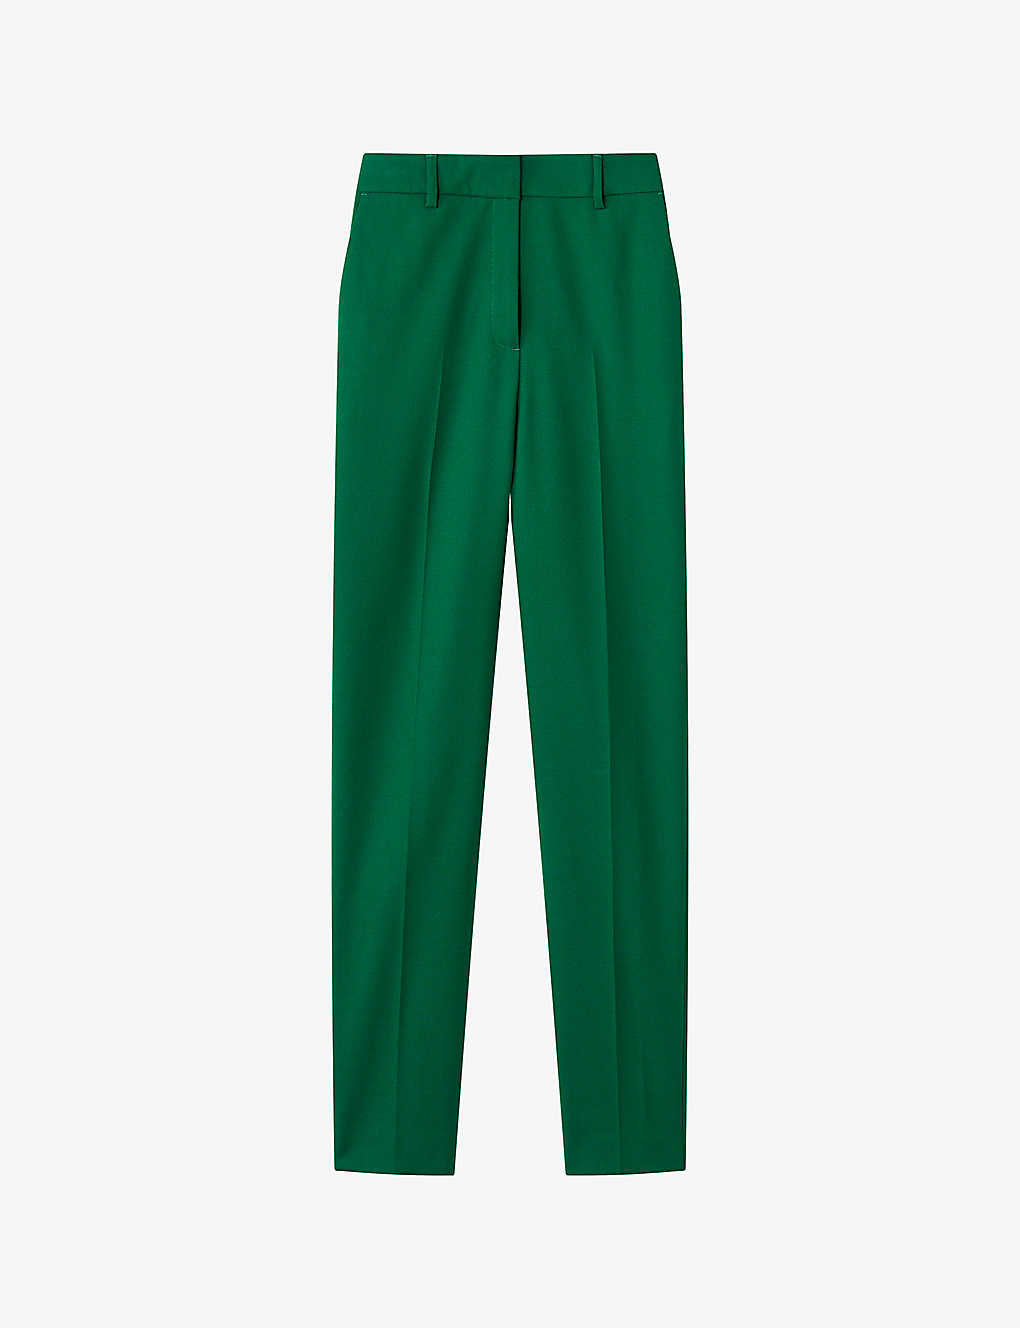 Shop Lk Bennett Women's Gre-green Mariner Slim-leg Mid-rise Woven Trousers